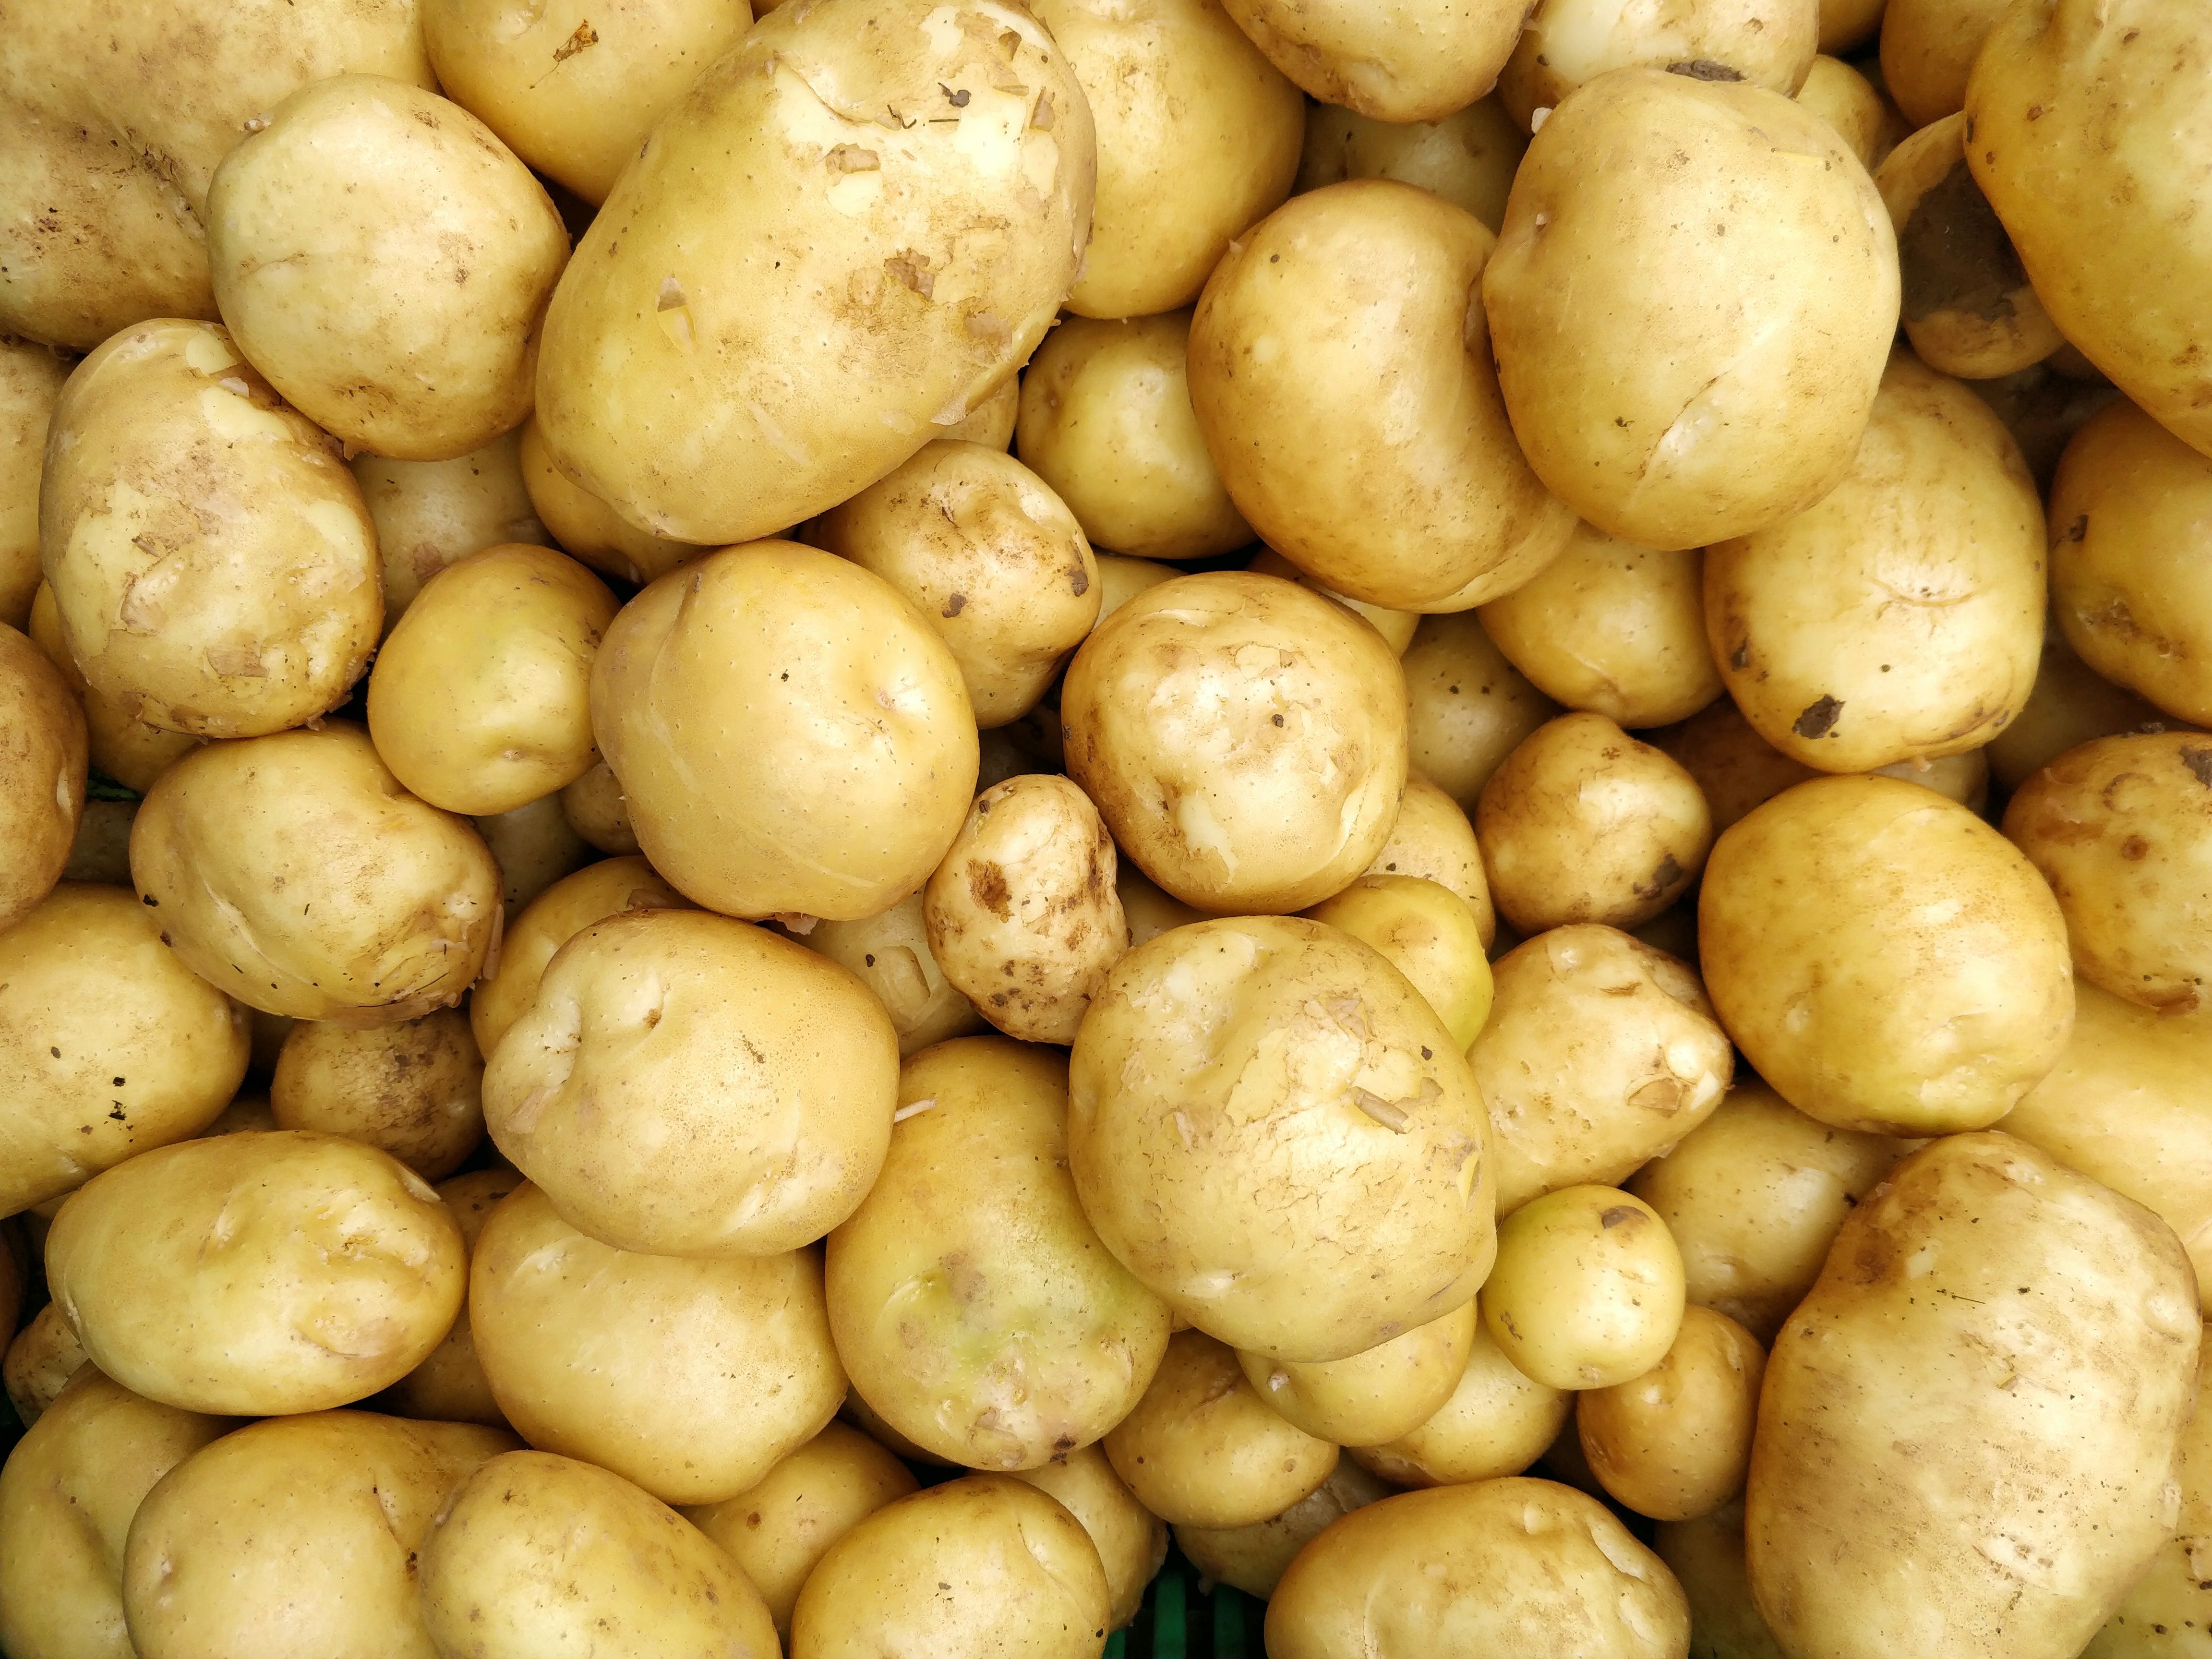 many potatoes